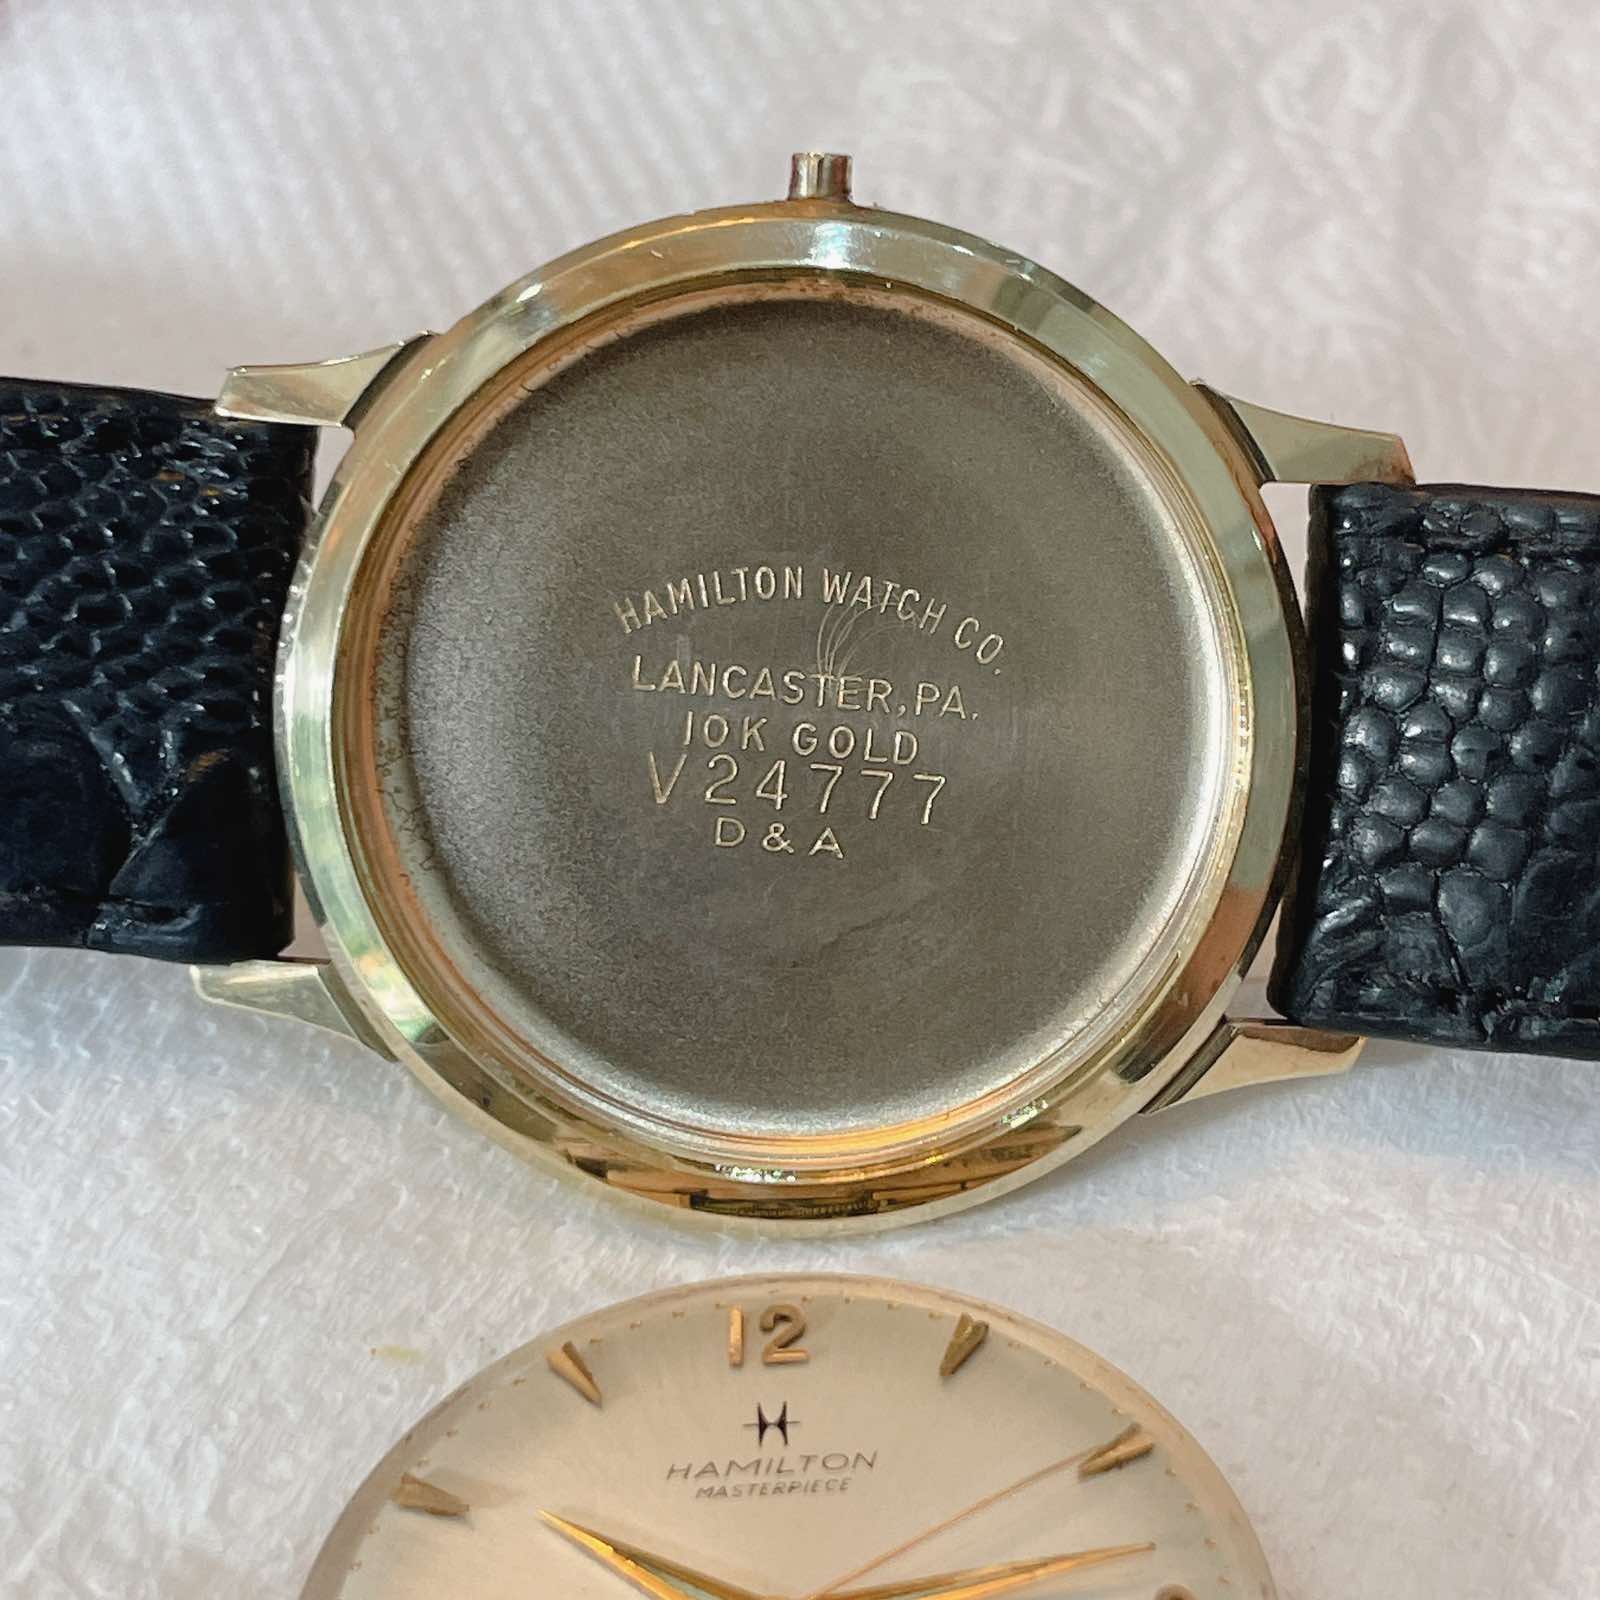 Đồng hồ cổ Hamilton Thin-0-matic vàng đúc 10k chính hãng thụy Sĩ